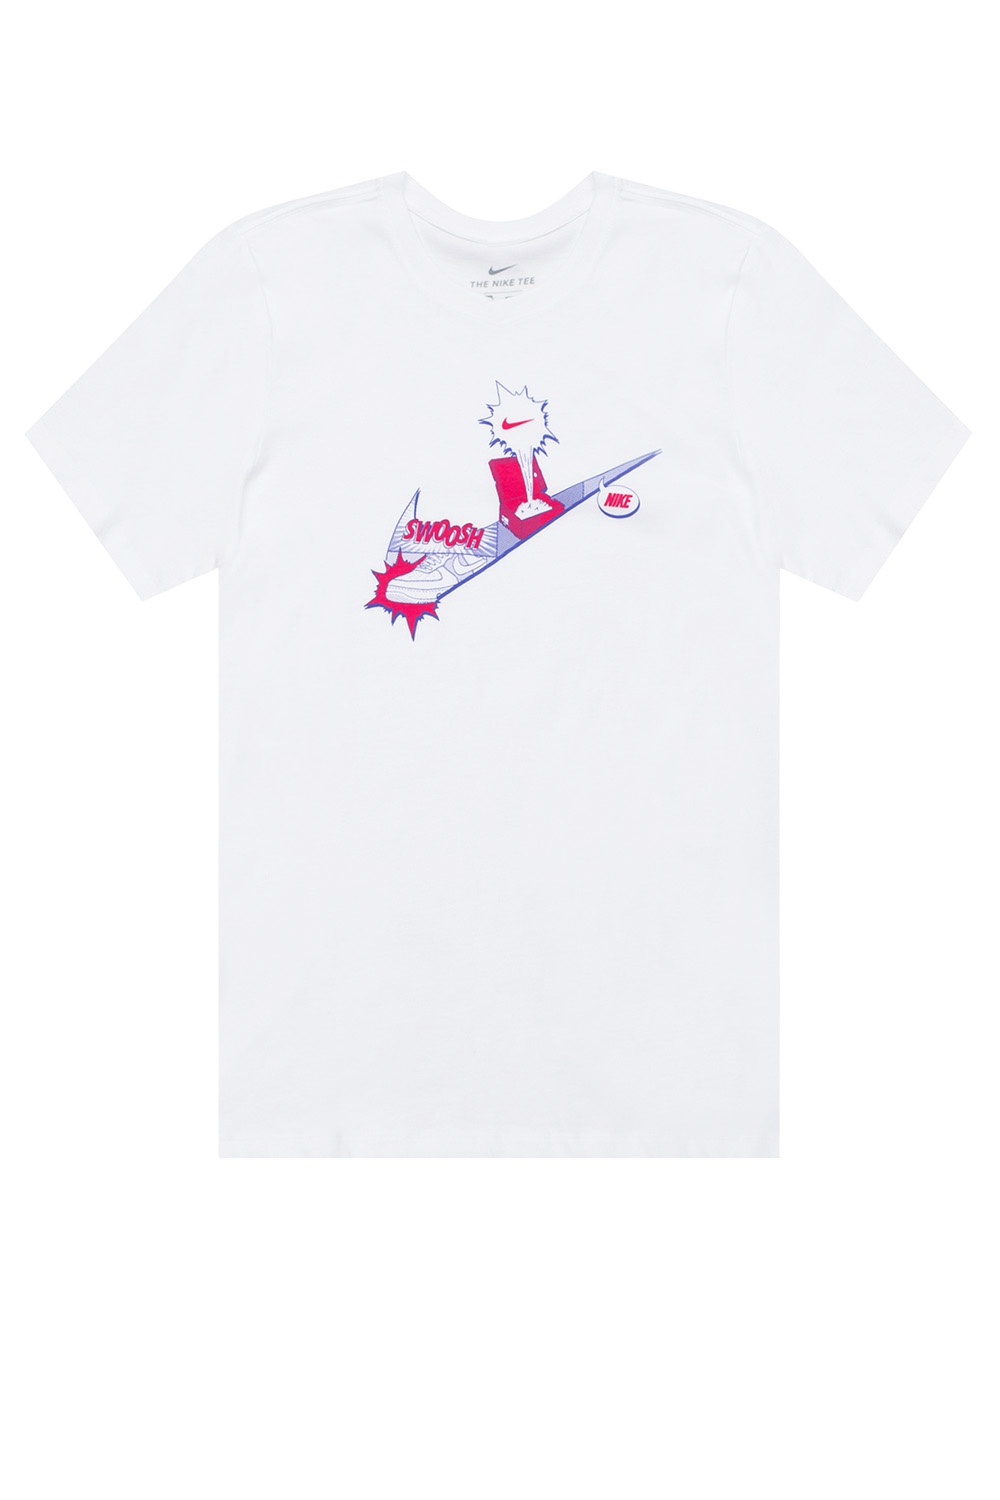 - IetpShops max Nepal free White mesh T cool 2017 Nike - Logo cool shirt lawsuits air - printable nike